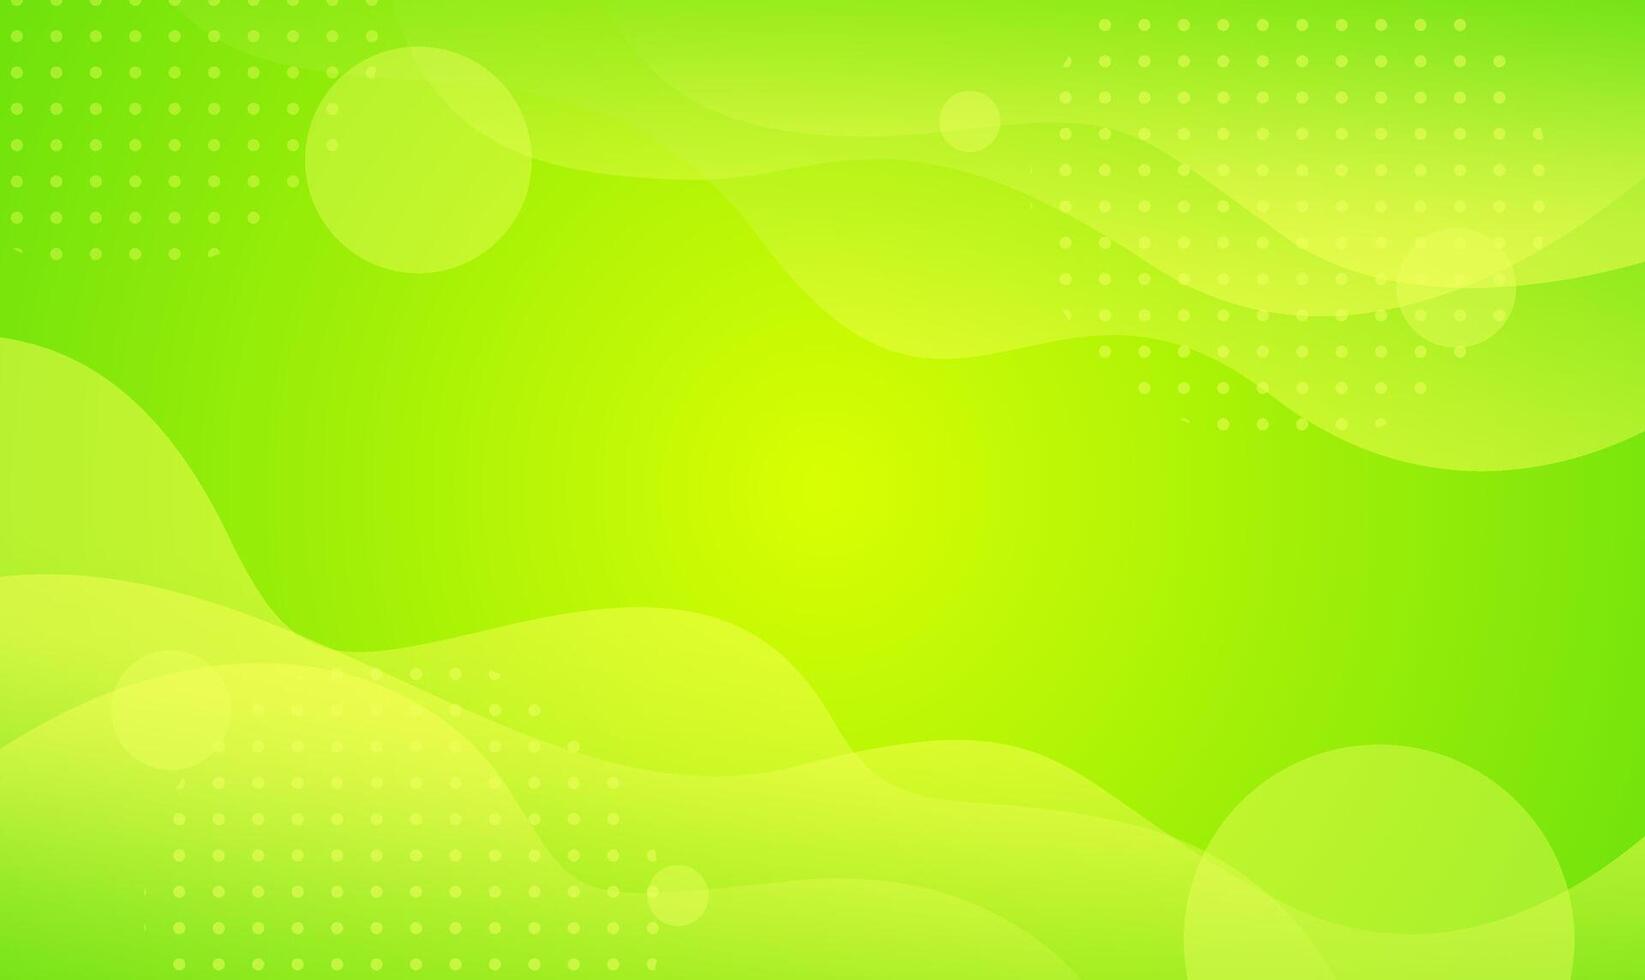 ljus grön gul vågor abstrakt bakgrund. modern lutning grön Färg. färsk mall baner för försäljning, evenemang, reklam, högtider, sommar, och partier. flytande form med mjuk skuggor vektor